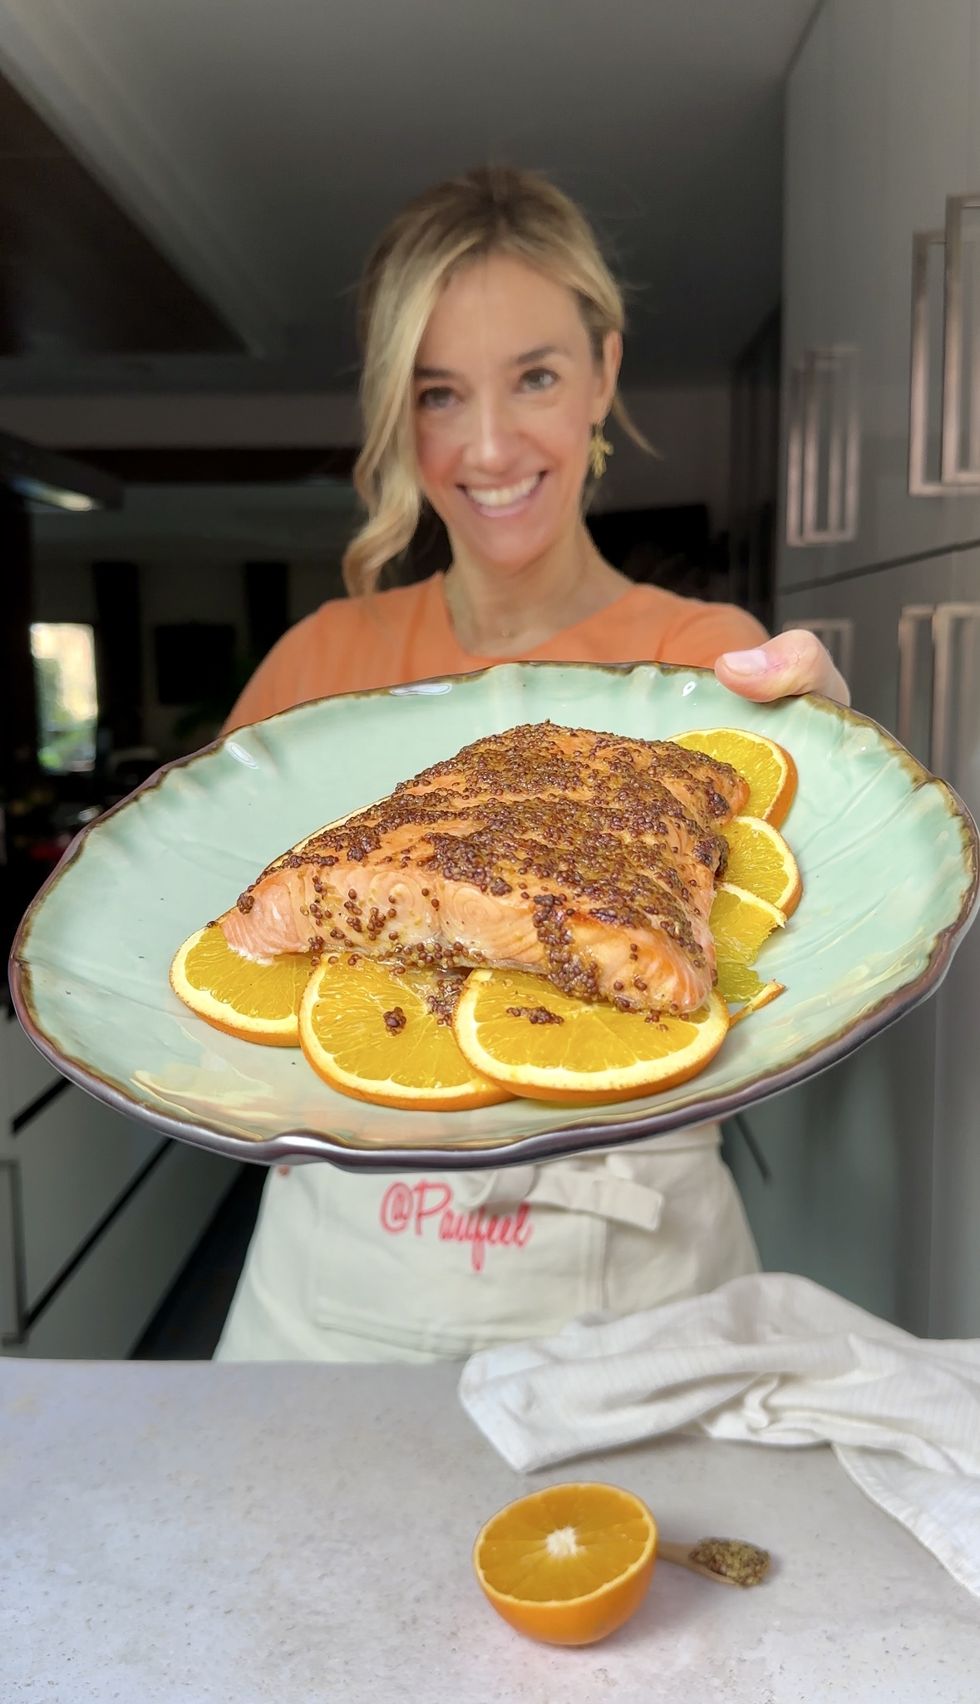 paula monreal, creadora de la cuenta de instagram paufeel con un plato de salmón